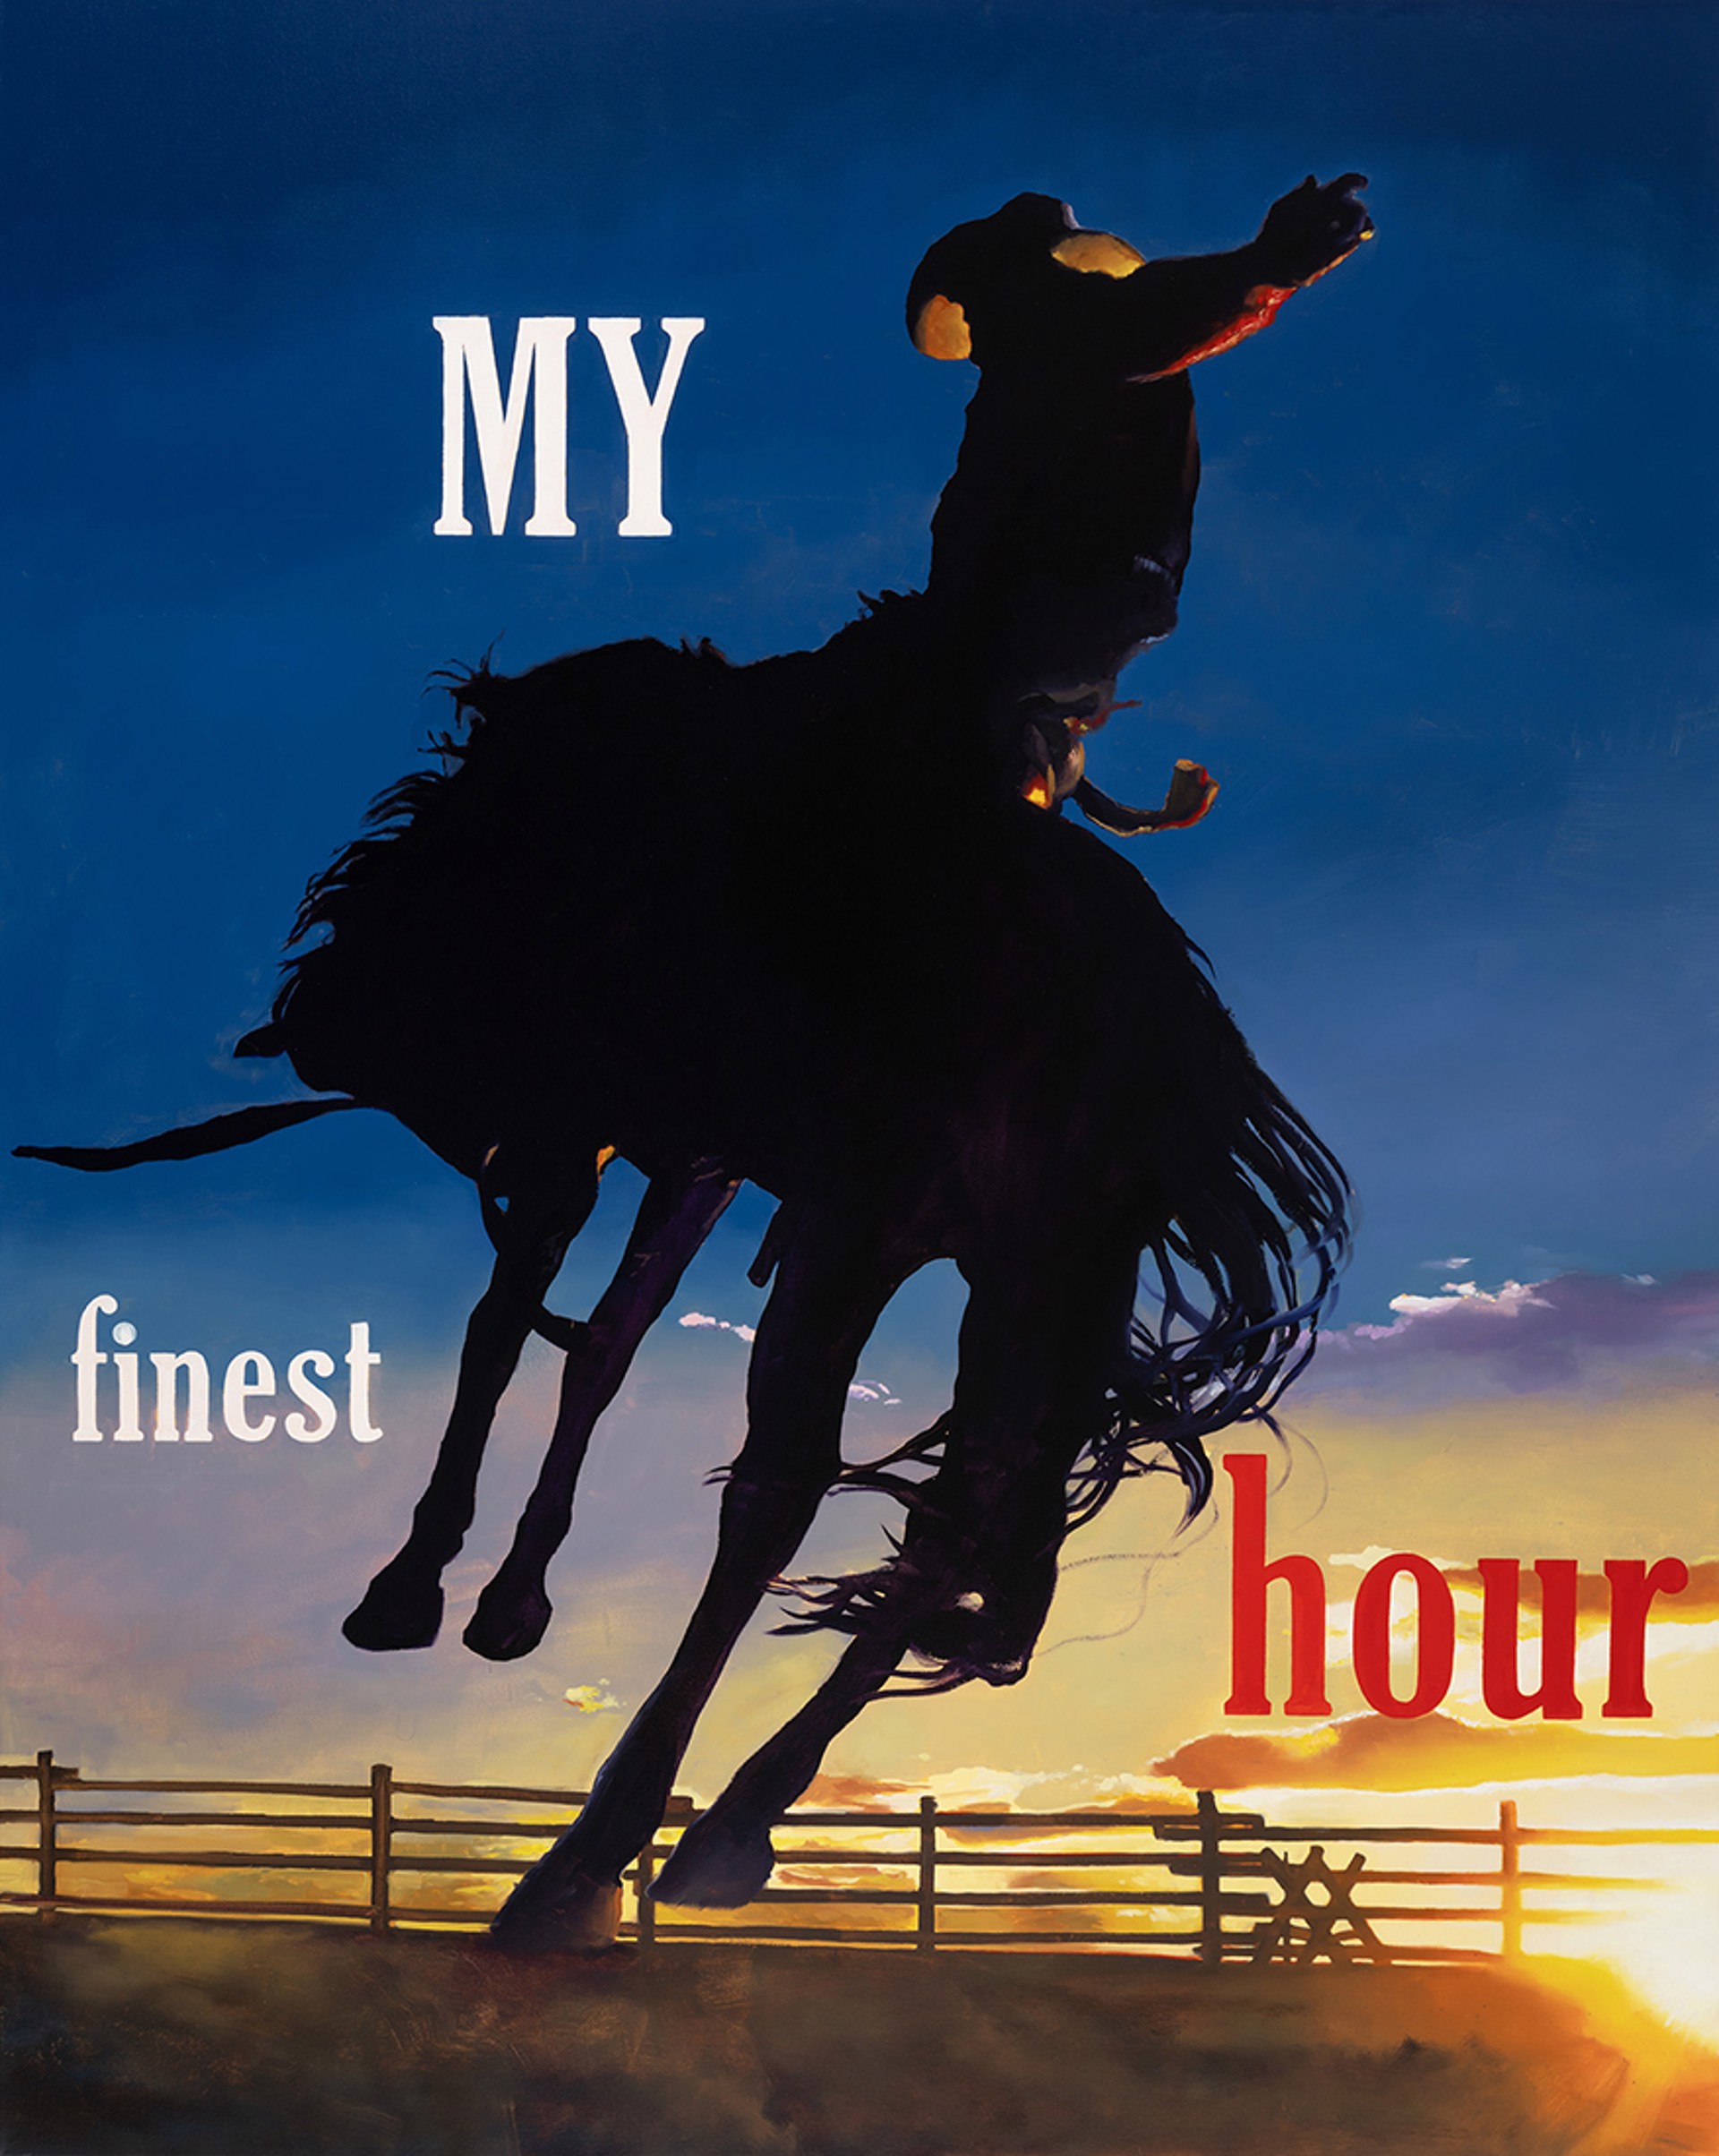 My Finest Hour by Geoffrey Gersten